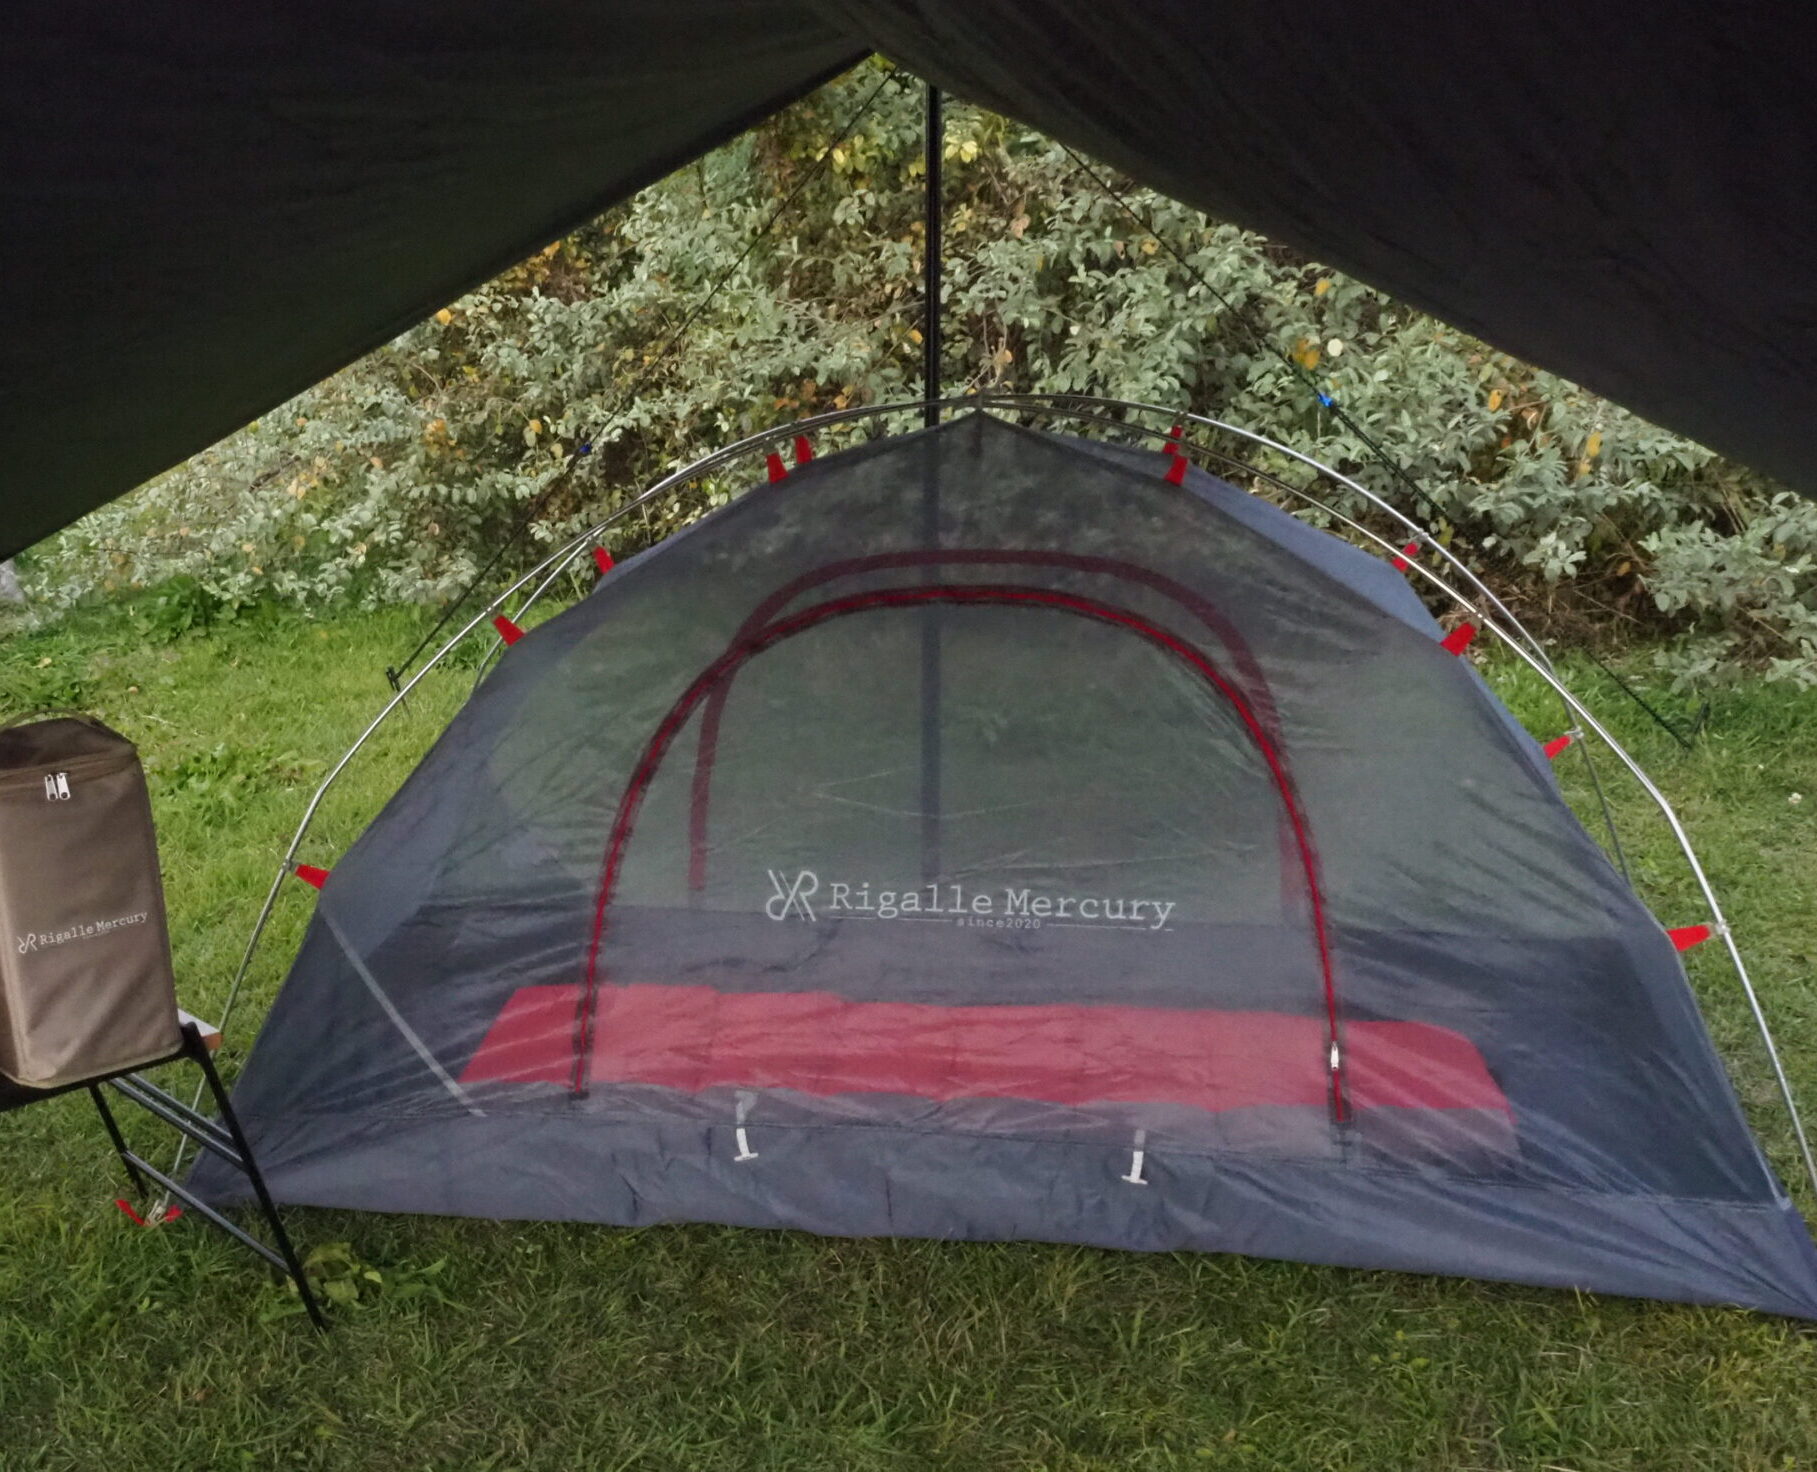 2分で読めるショートブログ！設営が簡単なのはワンタッチテントよりも軽量テント！